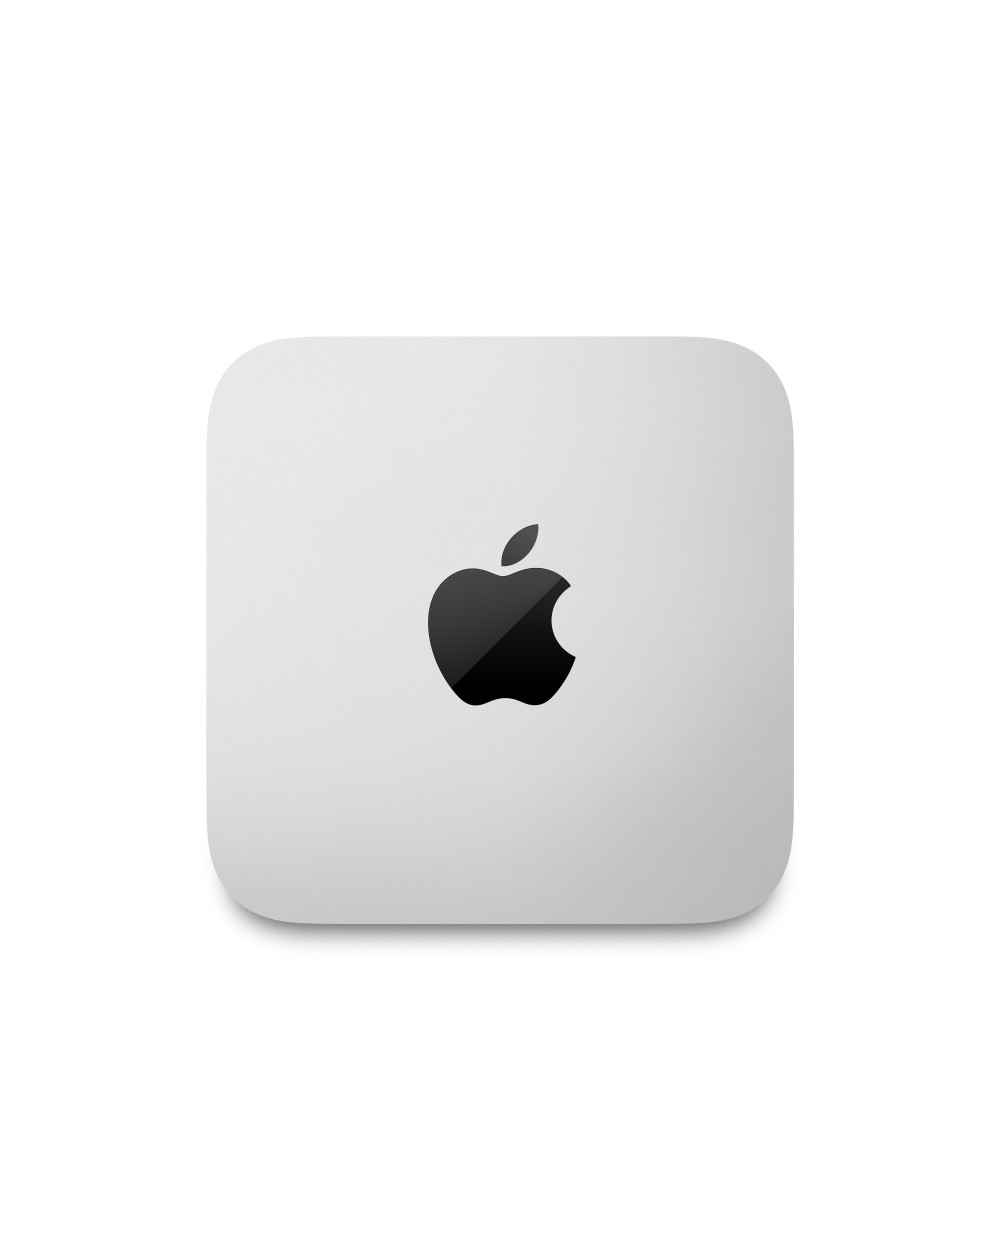 mac-studio-apple-m1-max-chip-con-10-core-cpu-and-24-core-gpu-512gb-ssd4